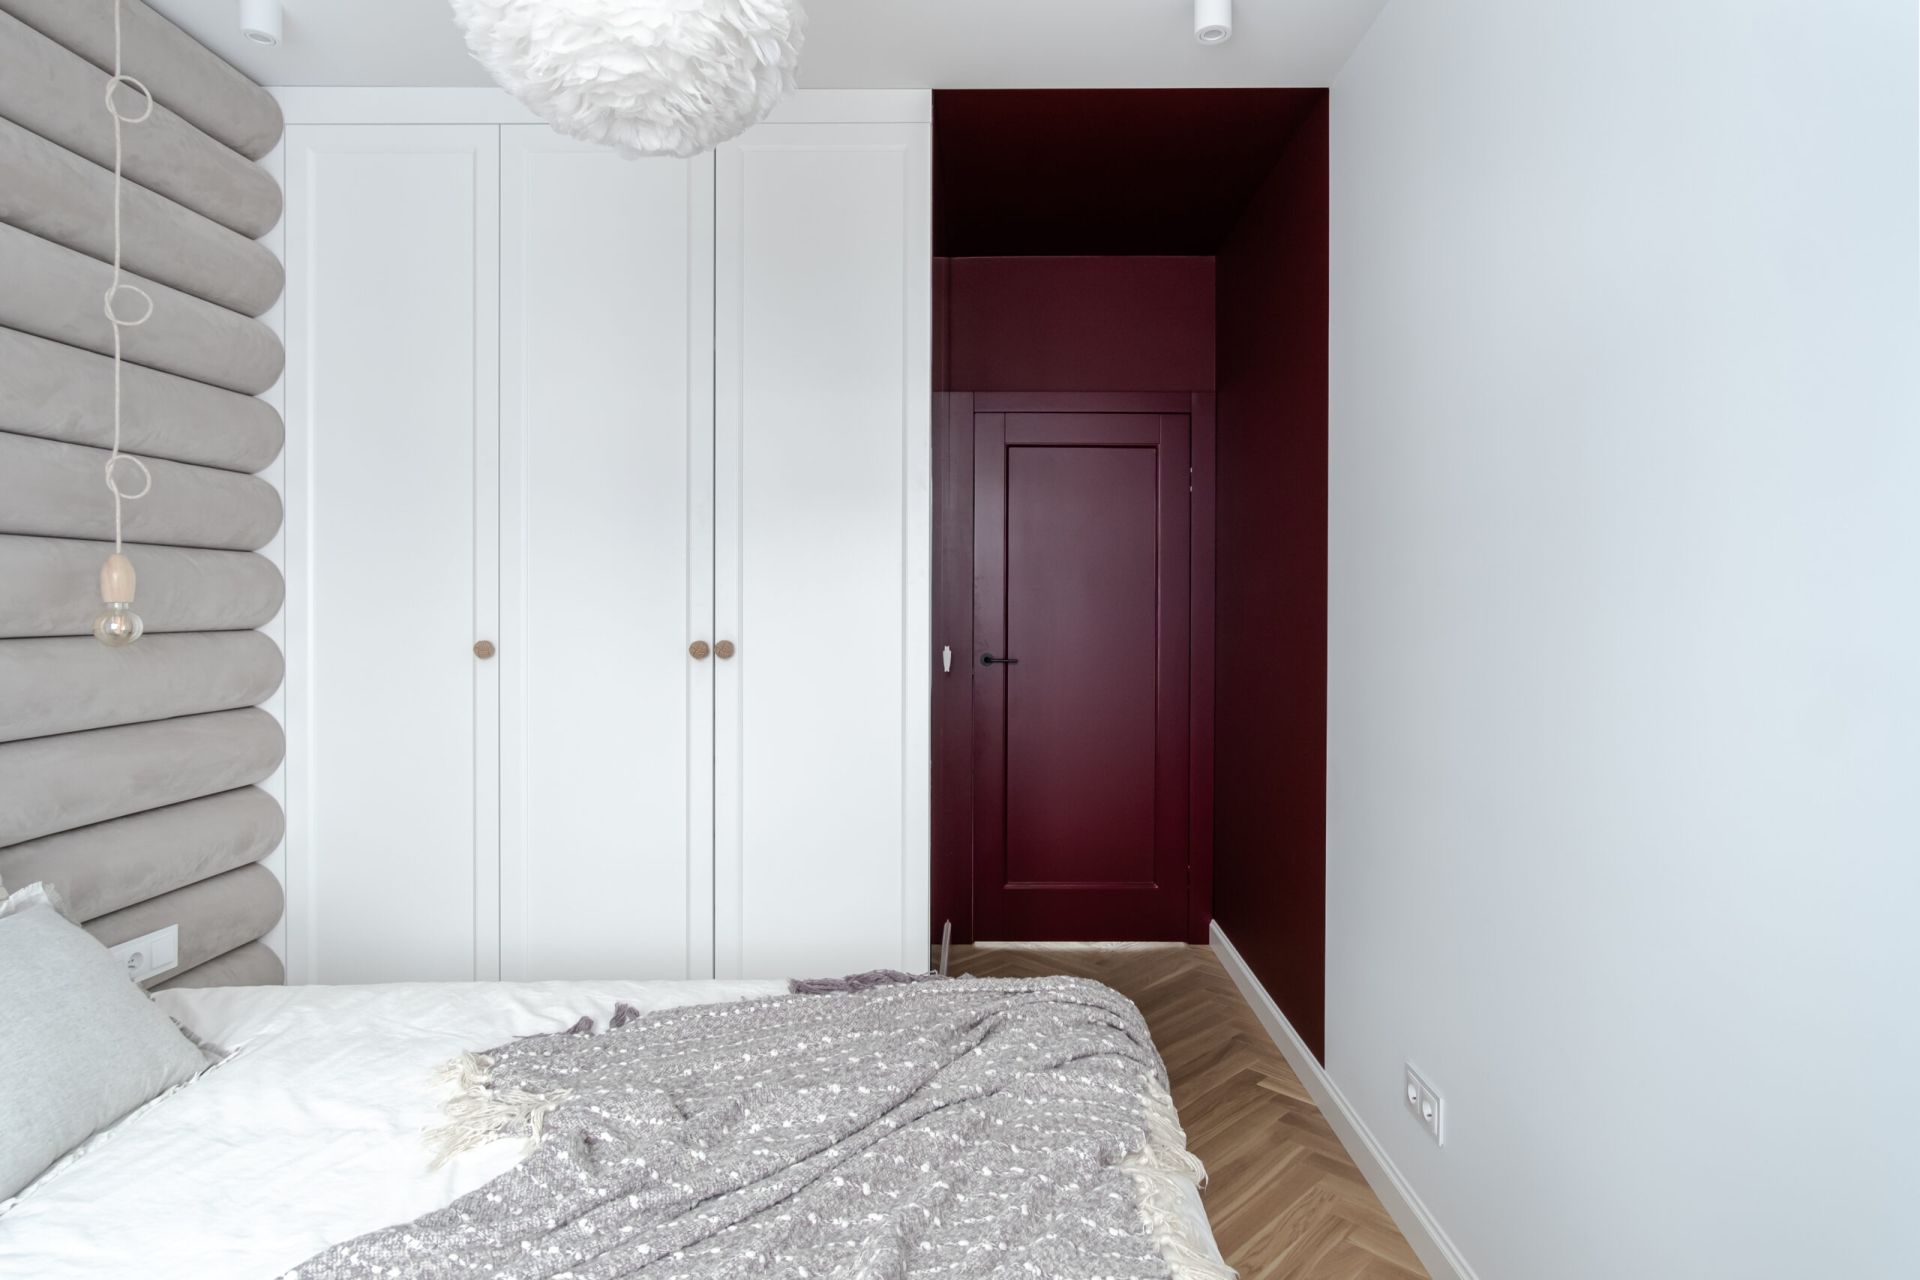 Sypialnia w bieli i kolorach ziemi, z burgundowym przejściem do łazienki. Projekt wnętrza: latreDesign. Fot. Bernadetta Kuczyńska